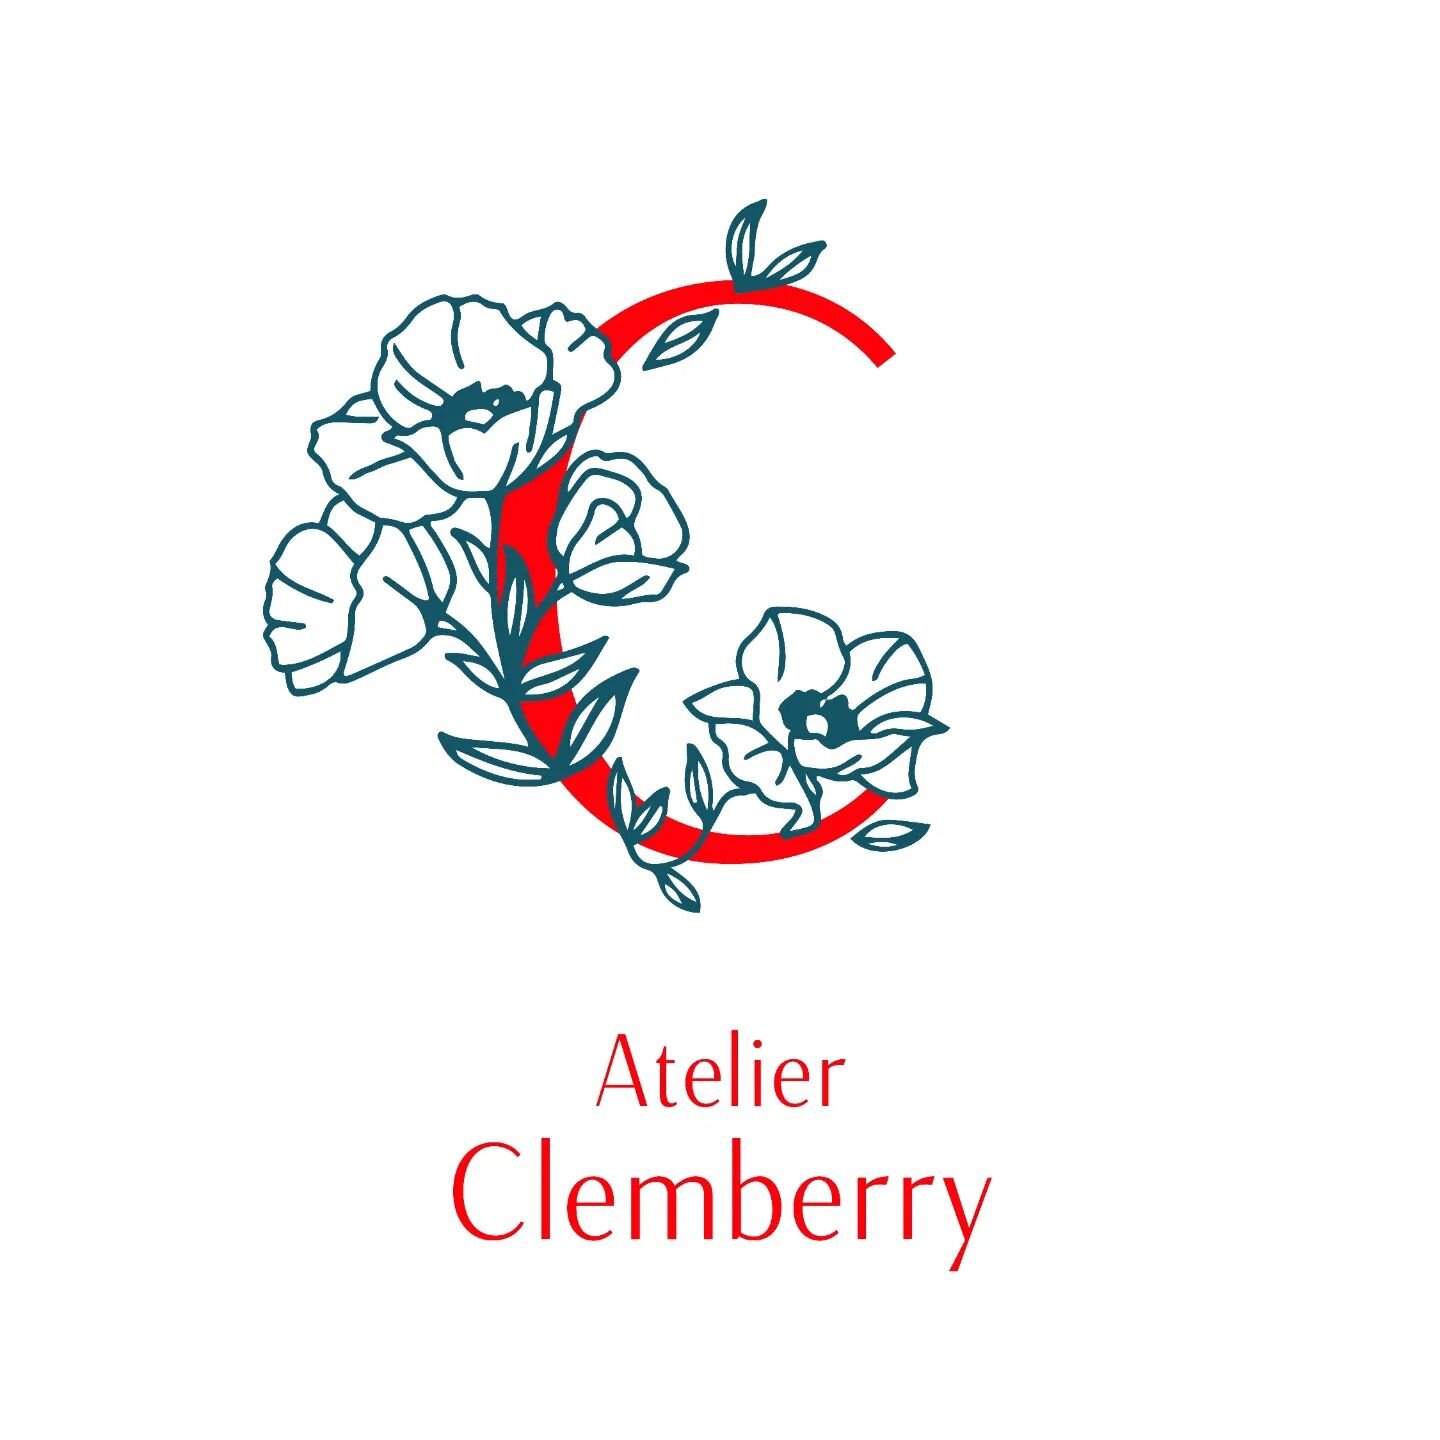 Un logo pour Atelier Clemberry 🌿 C&eacute;ramiques, gr&egrave;s &amp; porcelaines.

Cr&eacute;ations aux formes imparfaites &amp; ateliers bienveillants autour de la c&eacute;ramique. Par @clemberry bien s&ucirc;r 🍊

#logo #designgraphique #ceramic